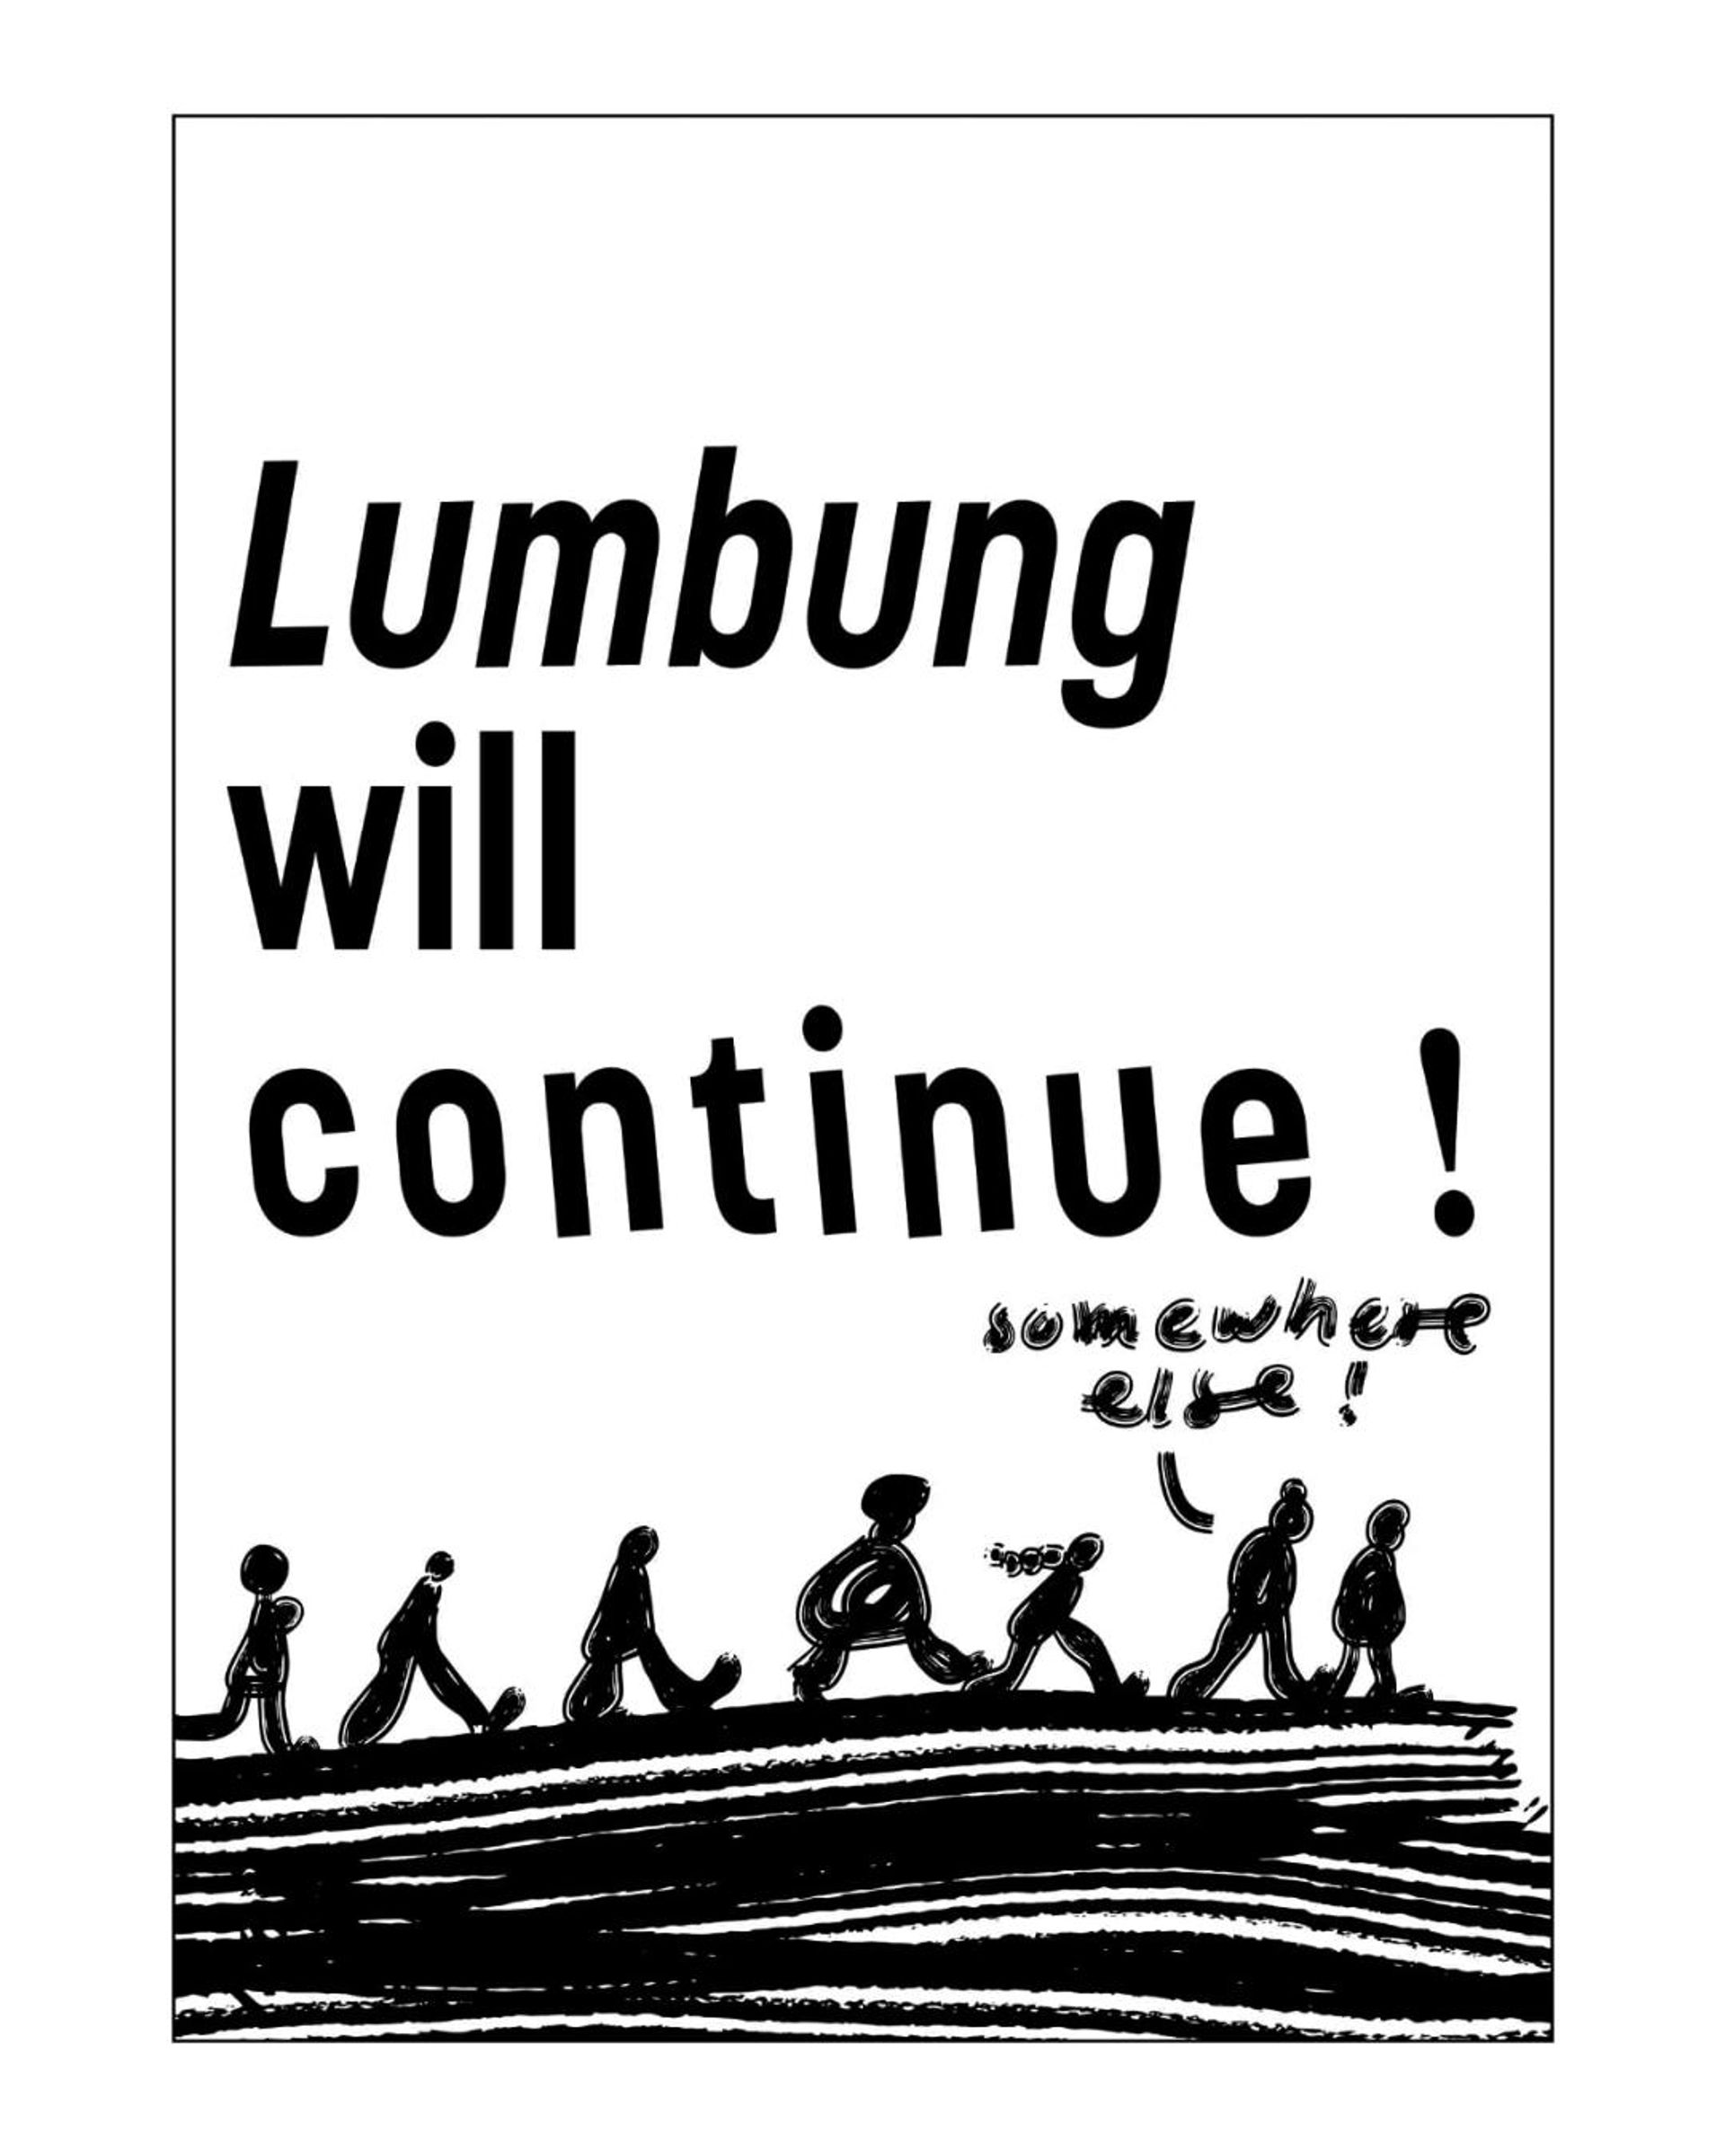 Très critiqué pendant la Documenta 15, Ruangrupa a déclaré vouloir poursuivre ailleurs le concept de « lumbung ». Courtesy Ruangrupa